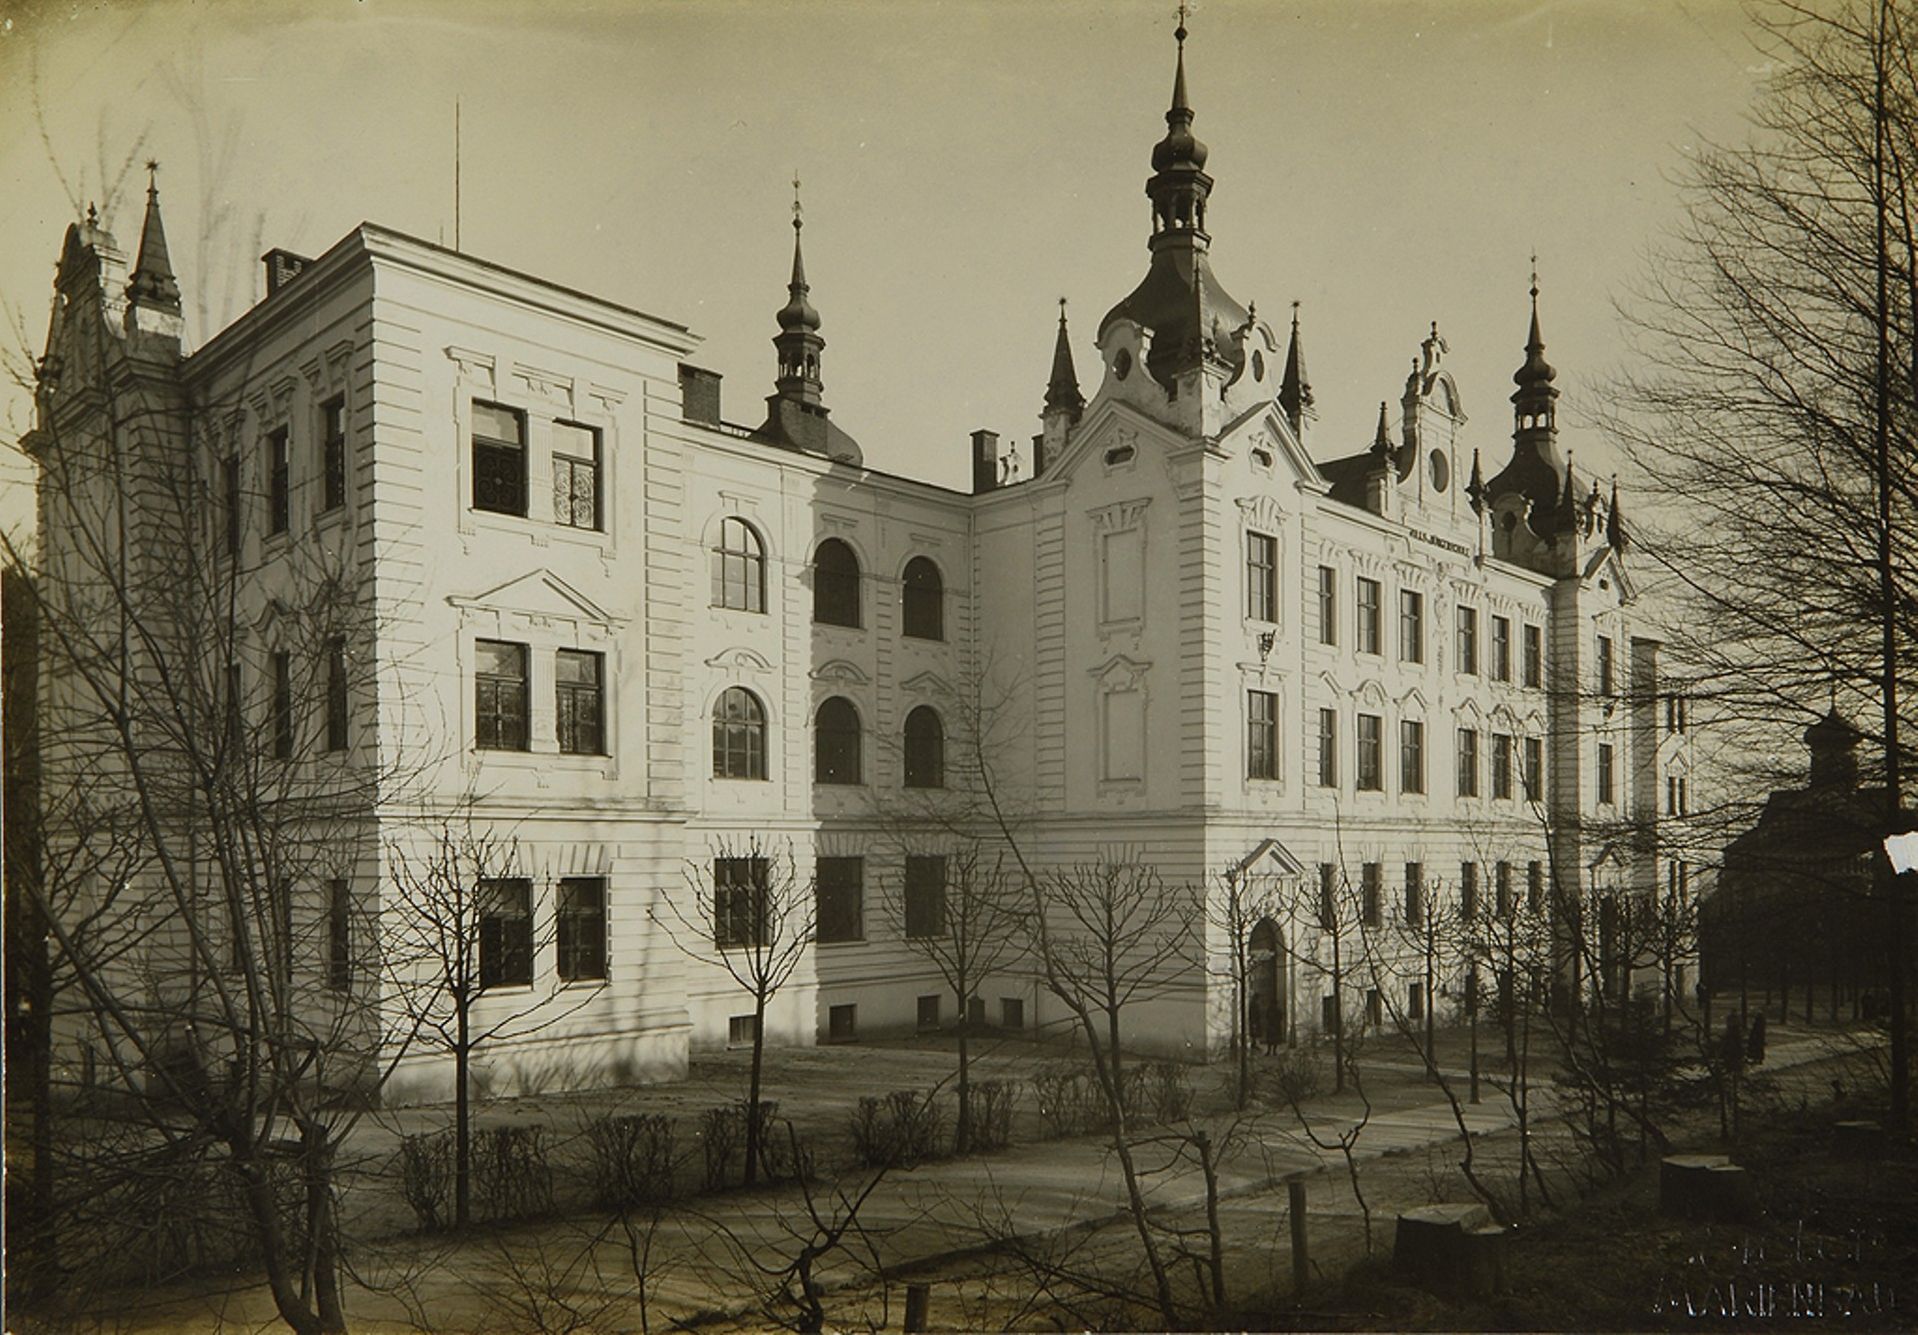 Historie školních budov